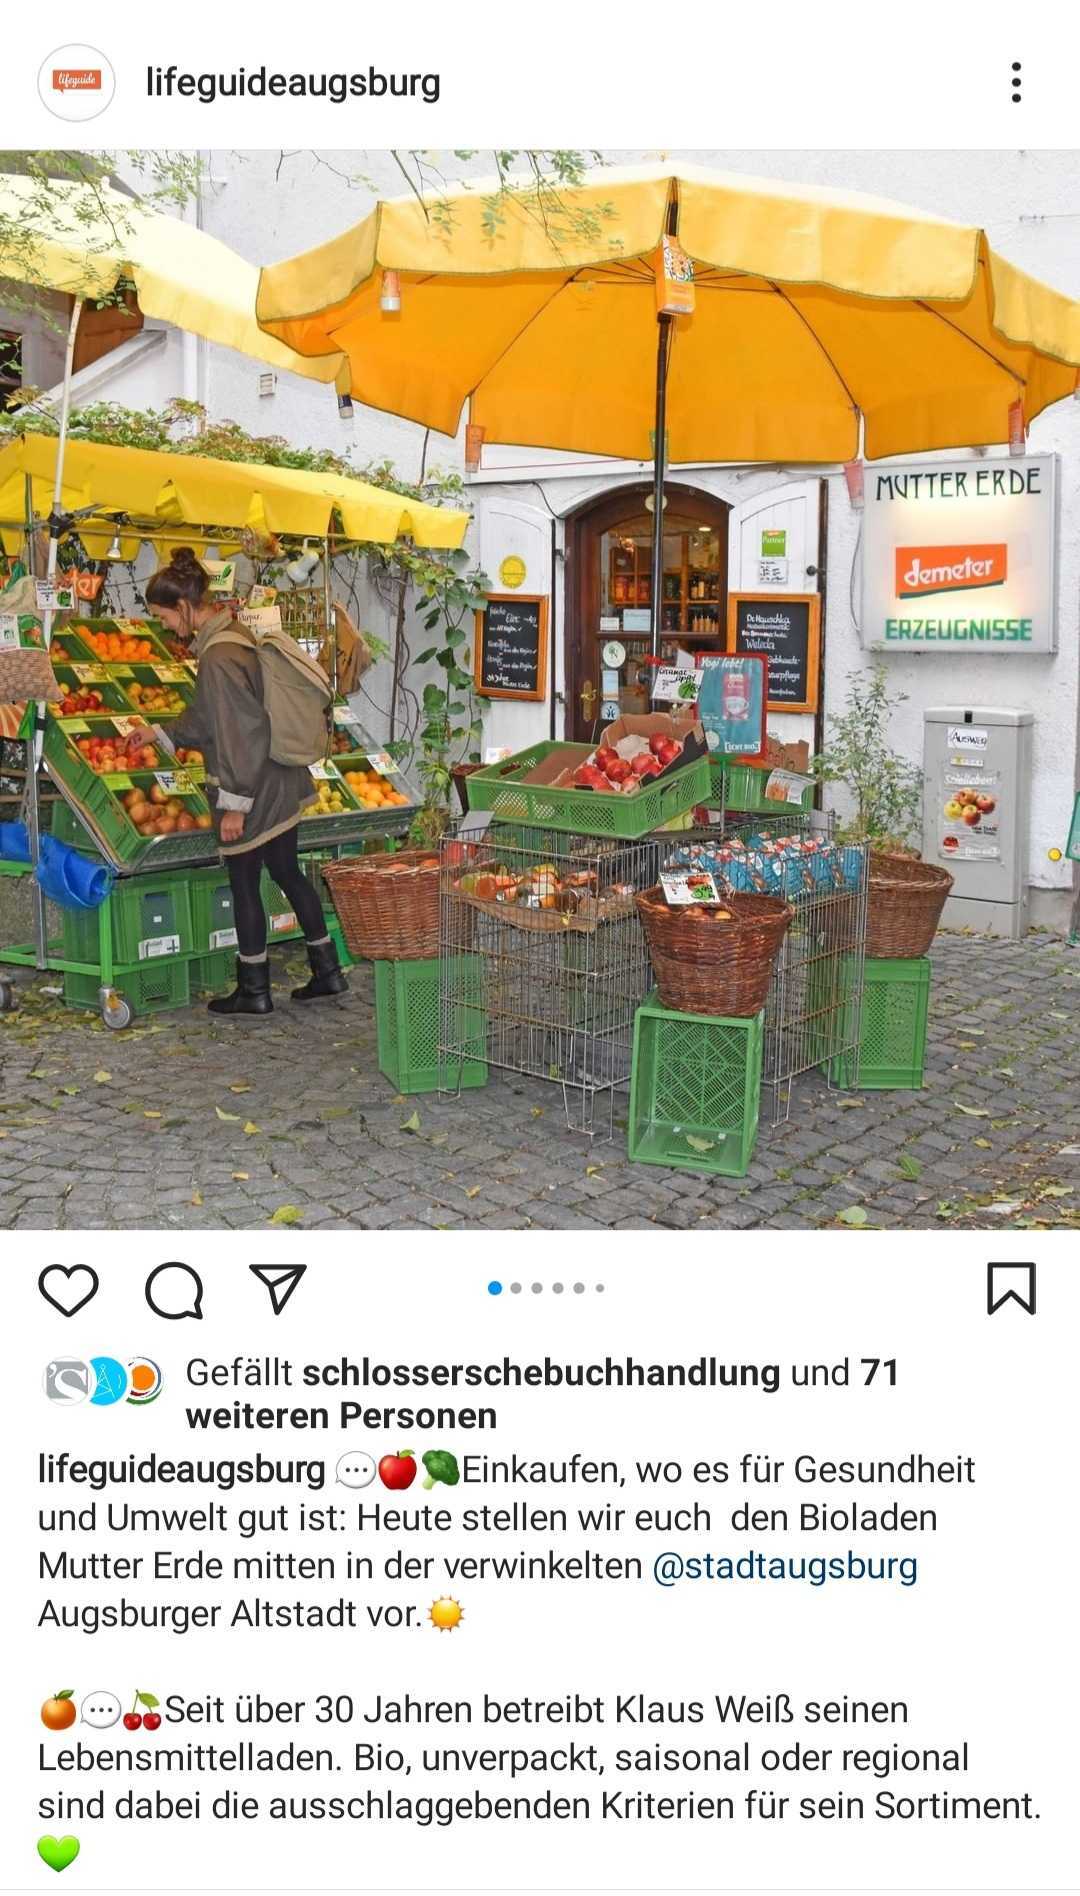 Instagram-Post des Lifeguide Augsburg zu Mutter-Erde am 08.06.2021